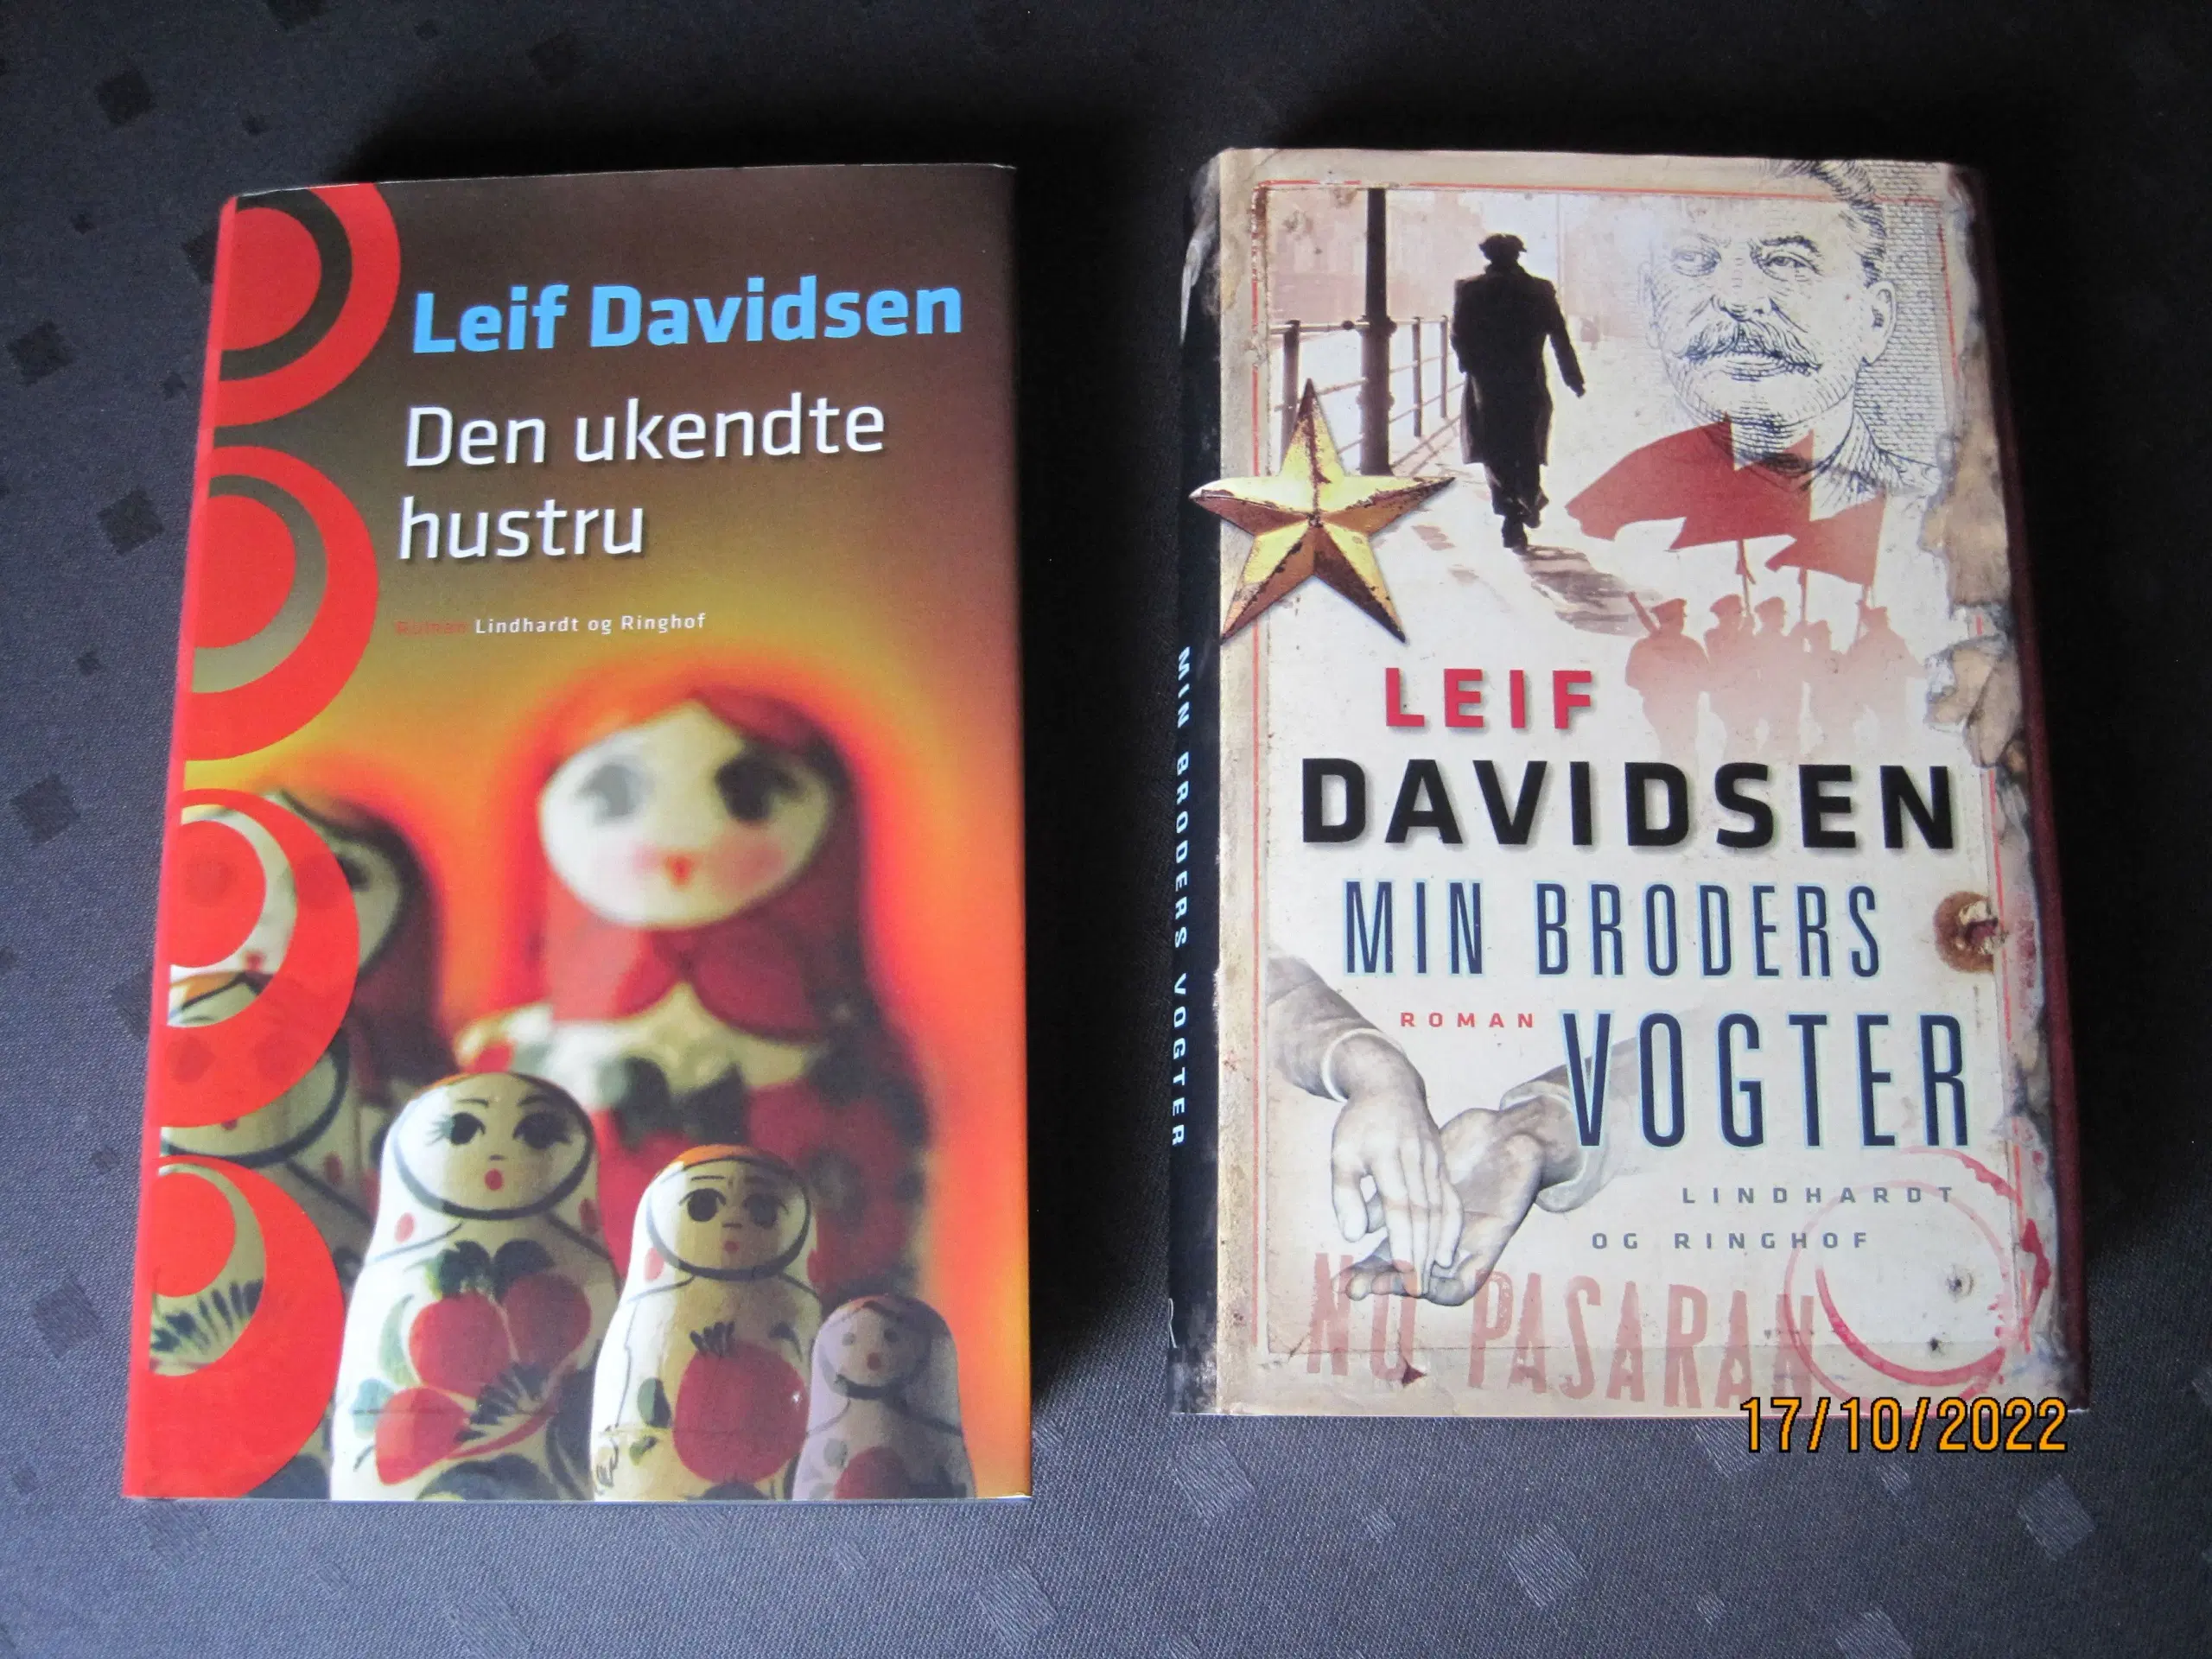 Leif Davidsen bøger